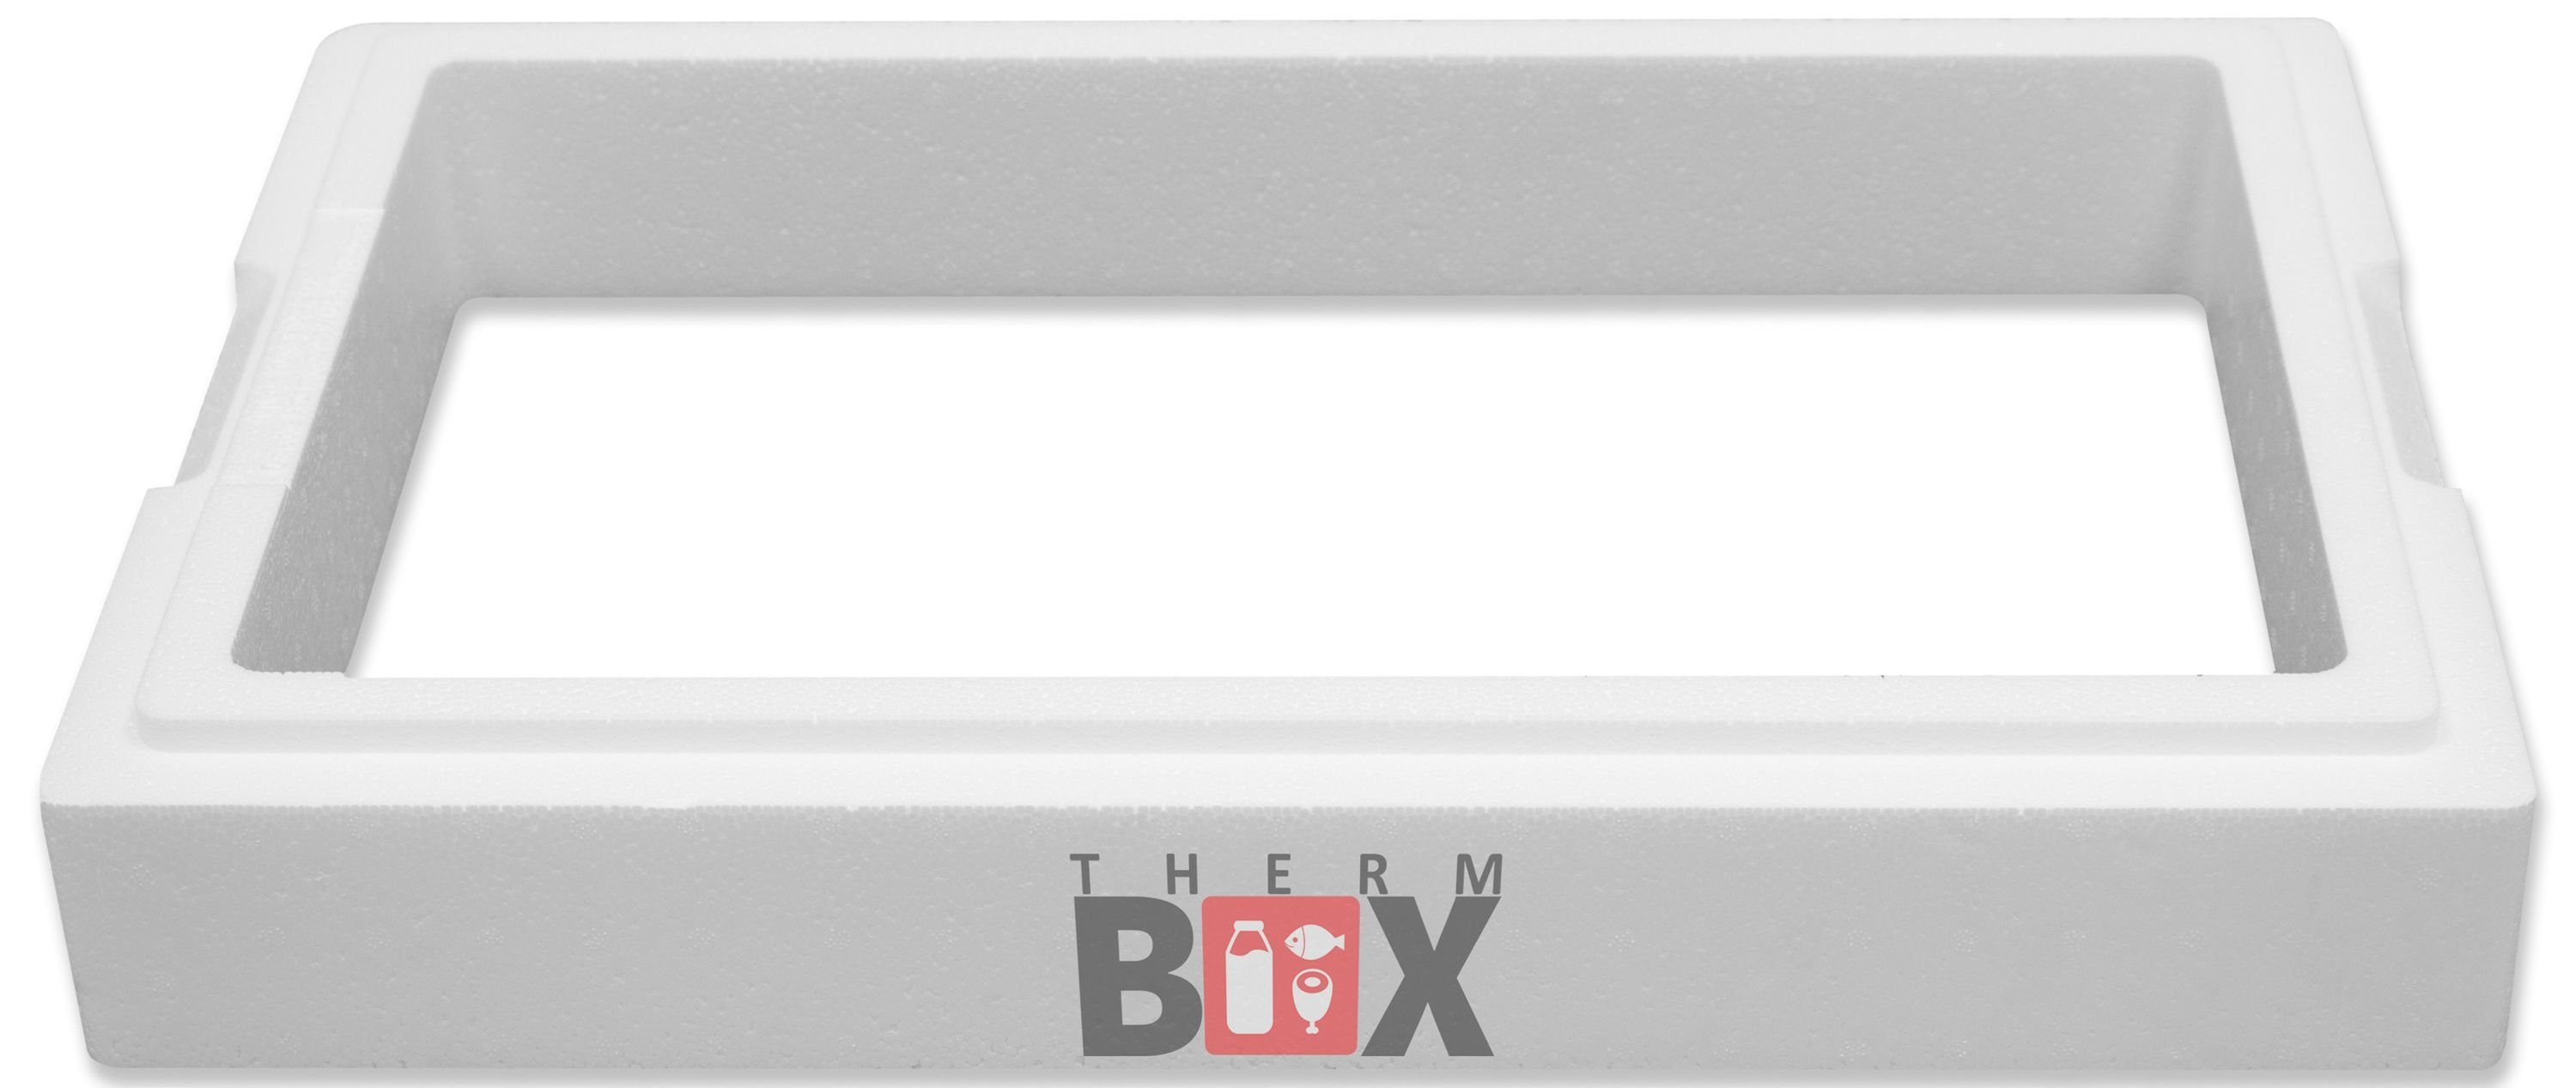 THERM-BOX Thermobehälter Modular Zusatzring 11M Wand: 4cm 11,9L Innenmaß:49x30x8cm, Styropor-Verdichtet, (1-tlg., 1 Zusatzring), Erweiterbar Isolierbox Thermbox Kühlbox Warmhaltebox Wiederverwendbar